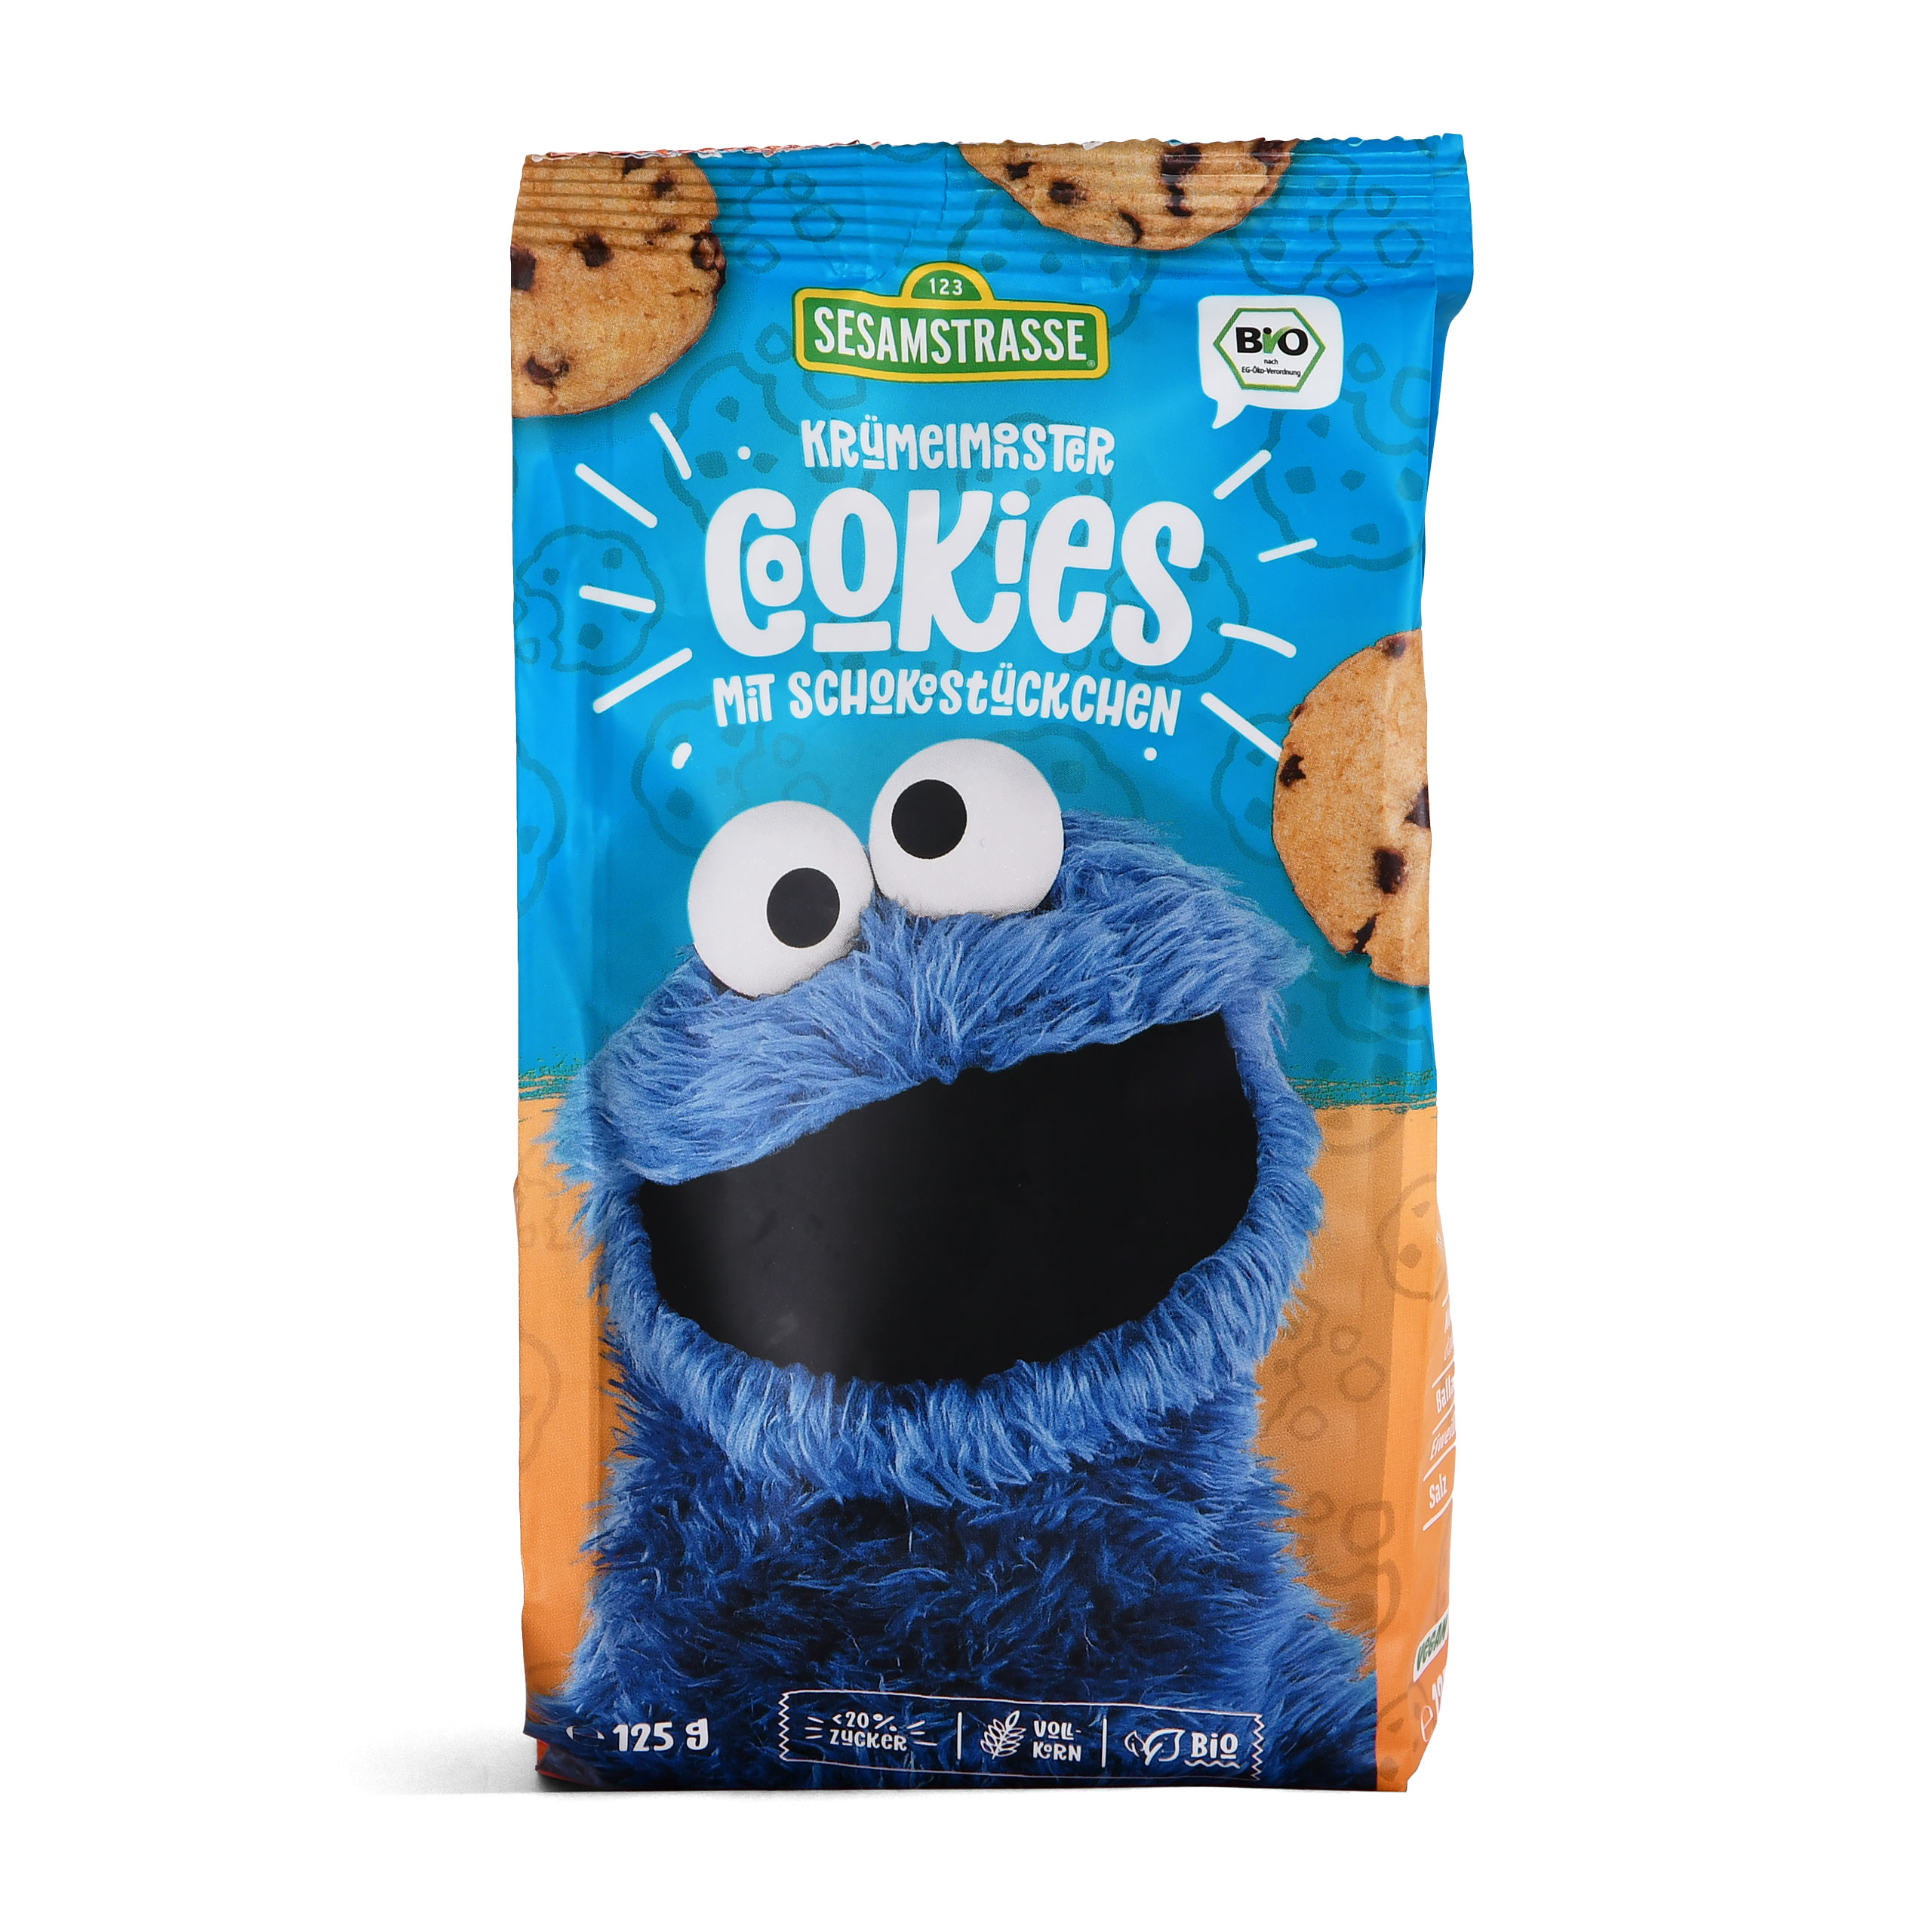 Sesame Street - Cookie Monster Cookies